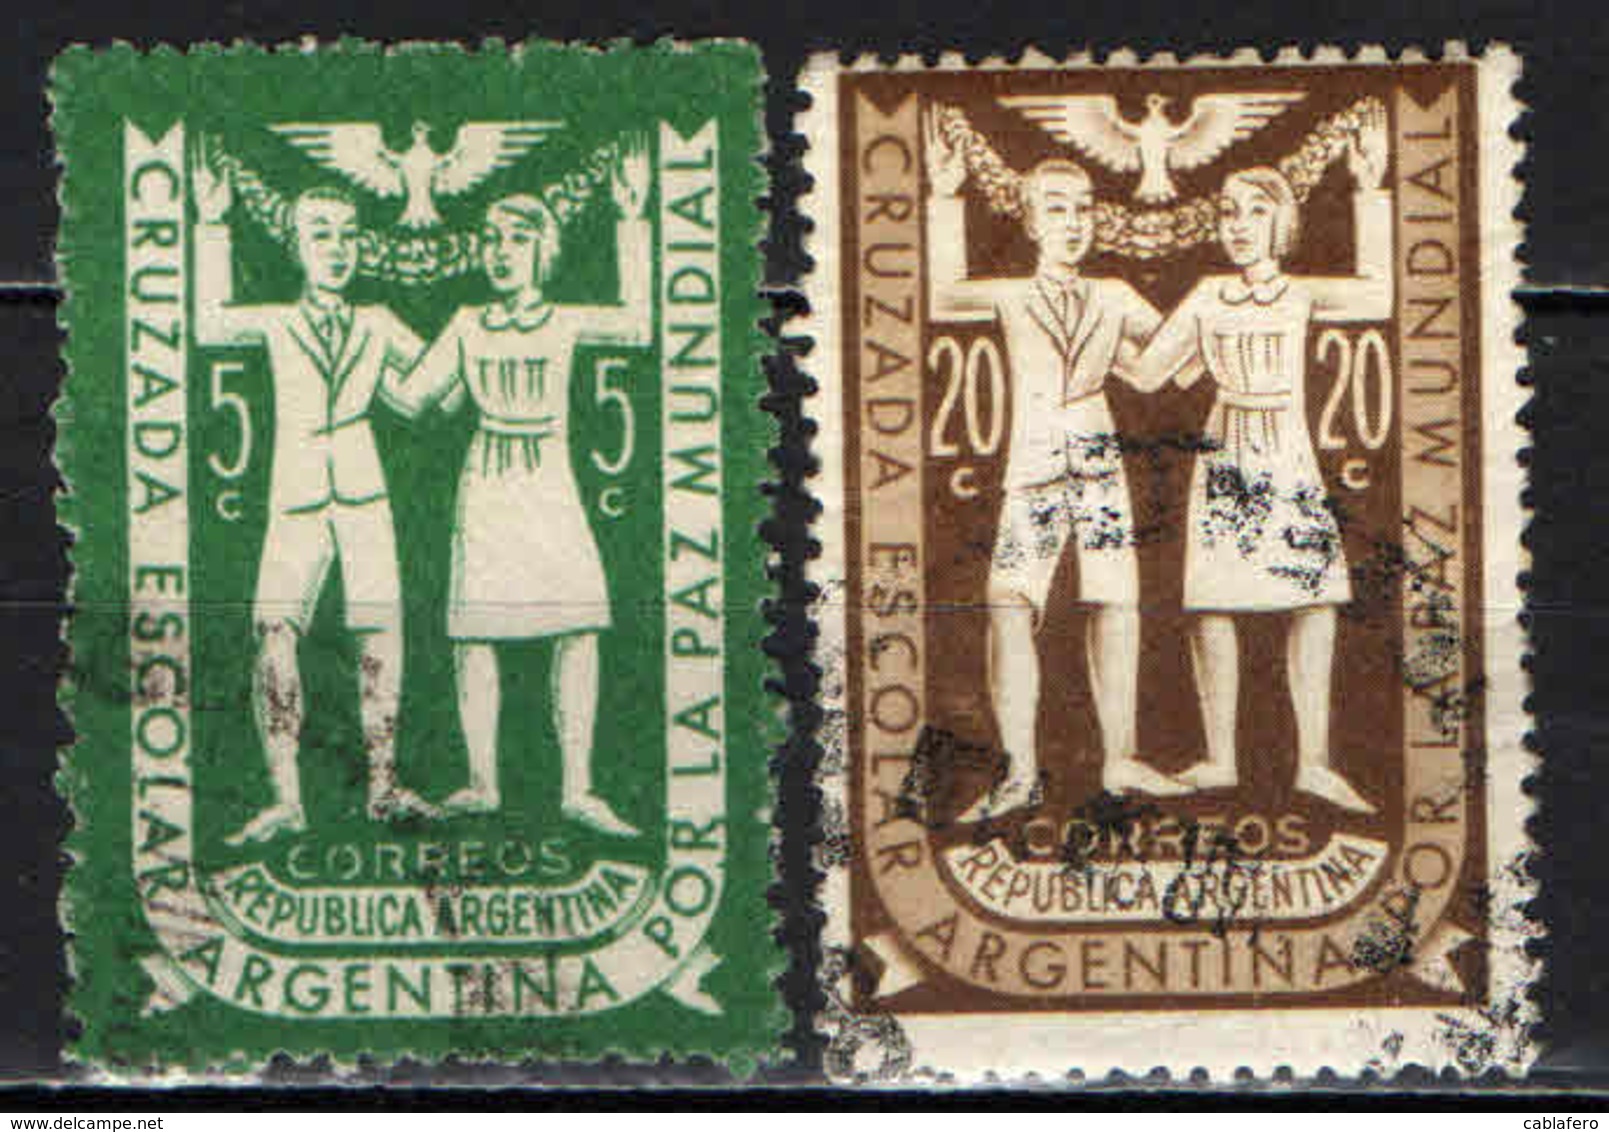 ARGENTINA - 1947 - LE SCUOLE ARGENTINE PER LA PACE - USATI - Usati